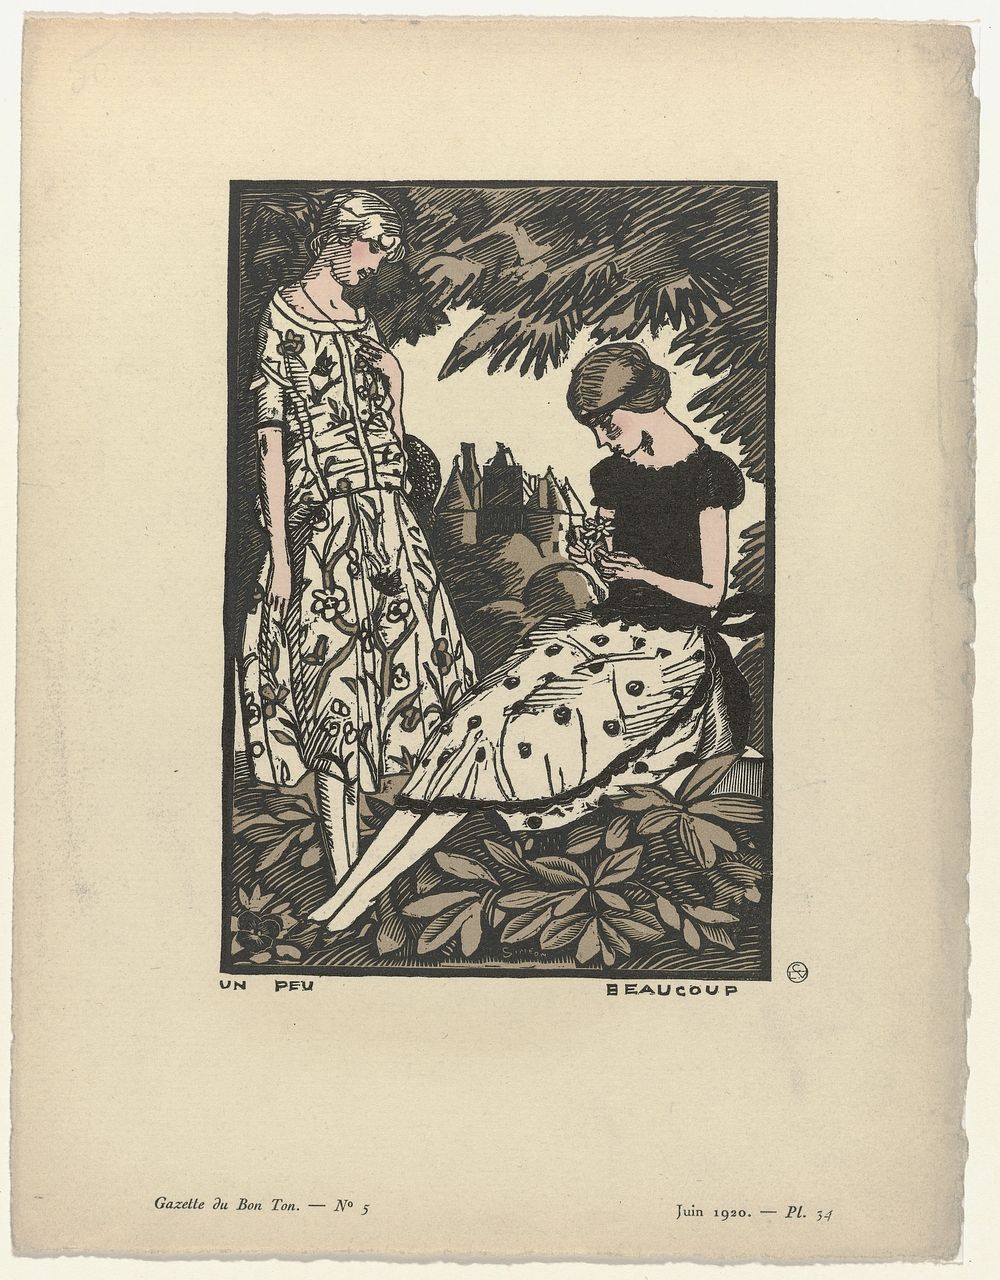 Gazette du Bon Ton, 1920 - No. 5, Pl. 34 : Un peu beaucoup (1920) by Fernand Siméon, anonymous and Lucien Vogel